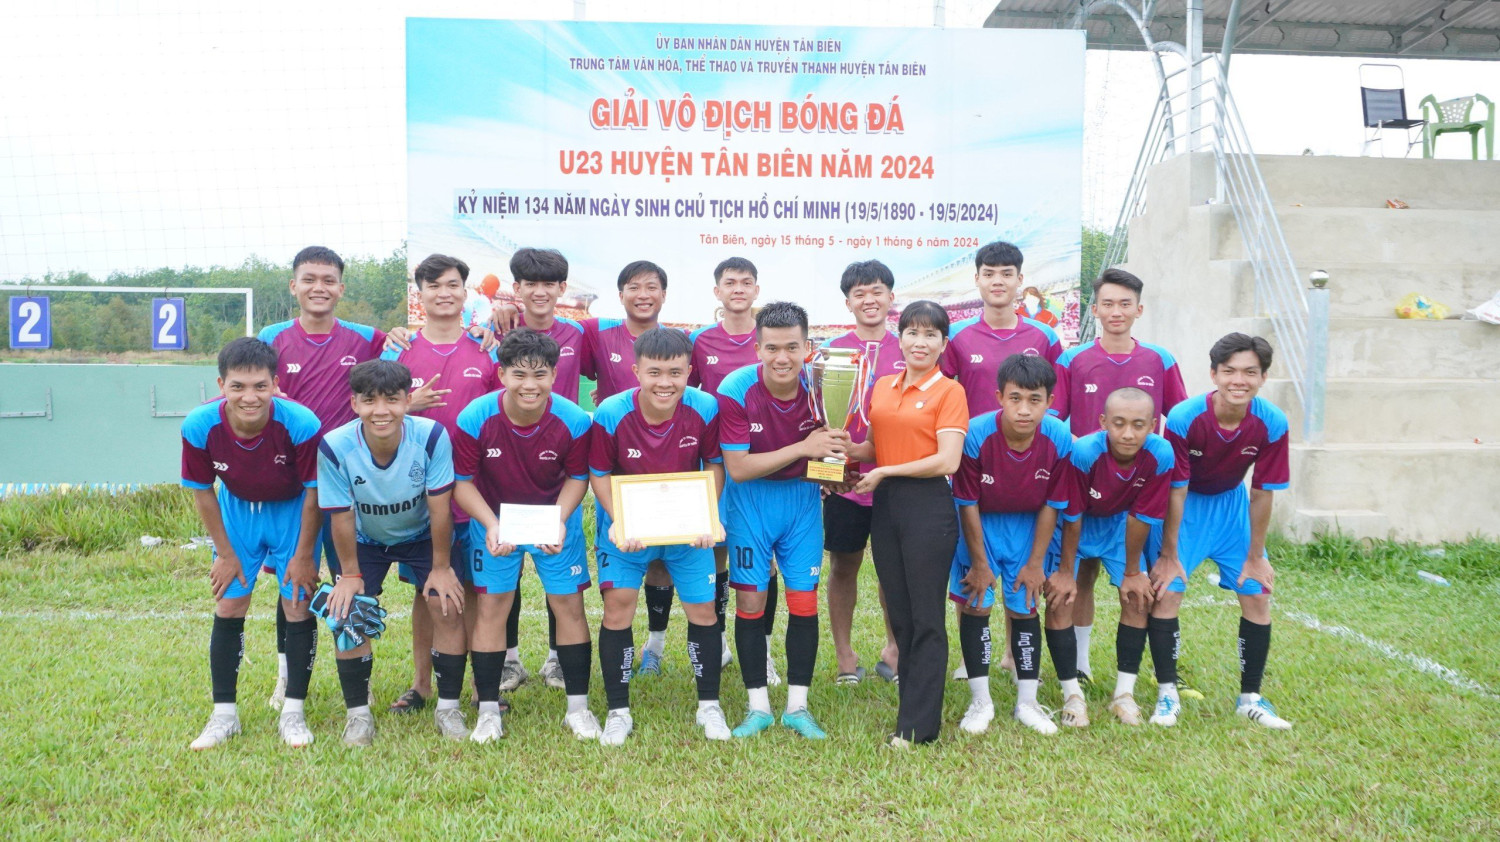 Bế mạc giải giải bóng đá U23 huyện Tân Biên năm 2024